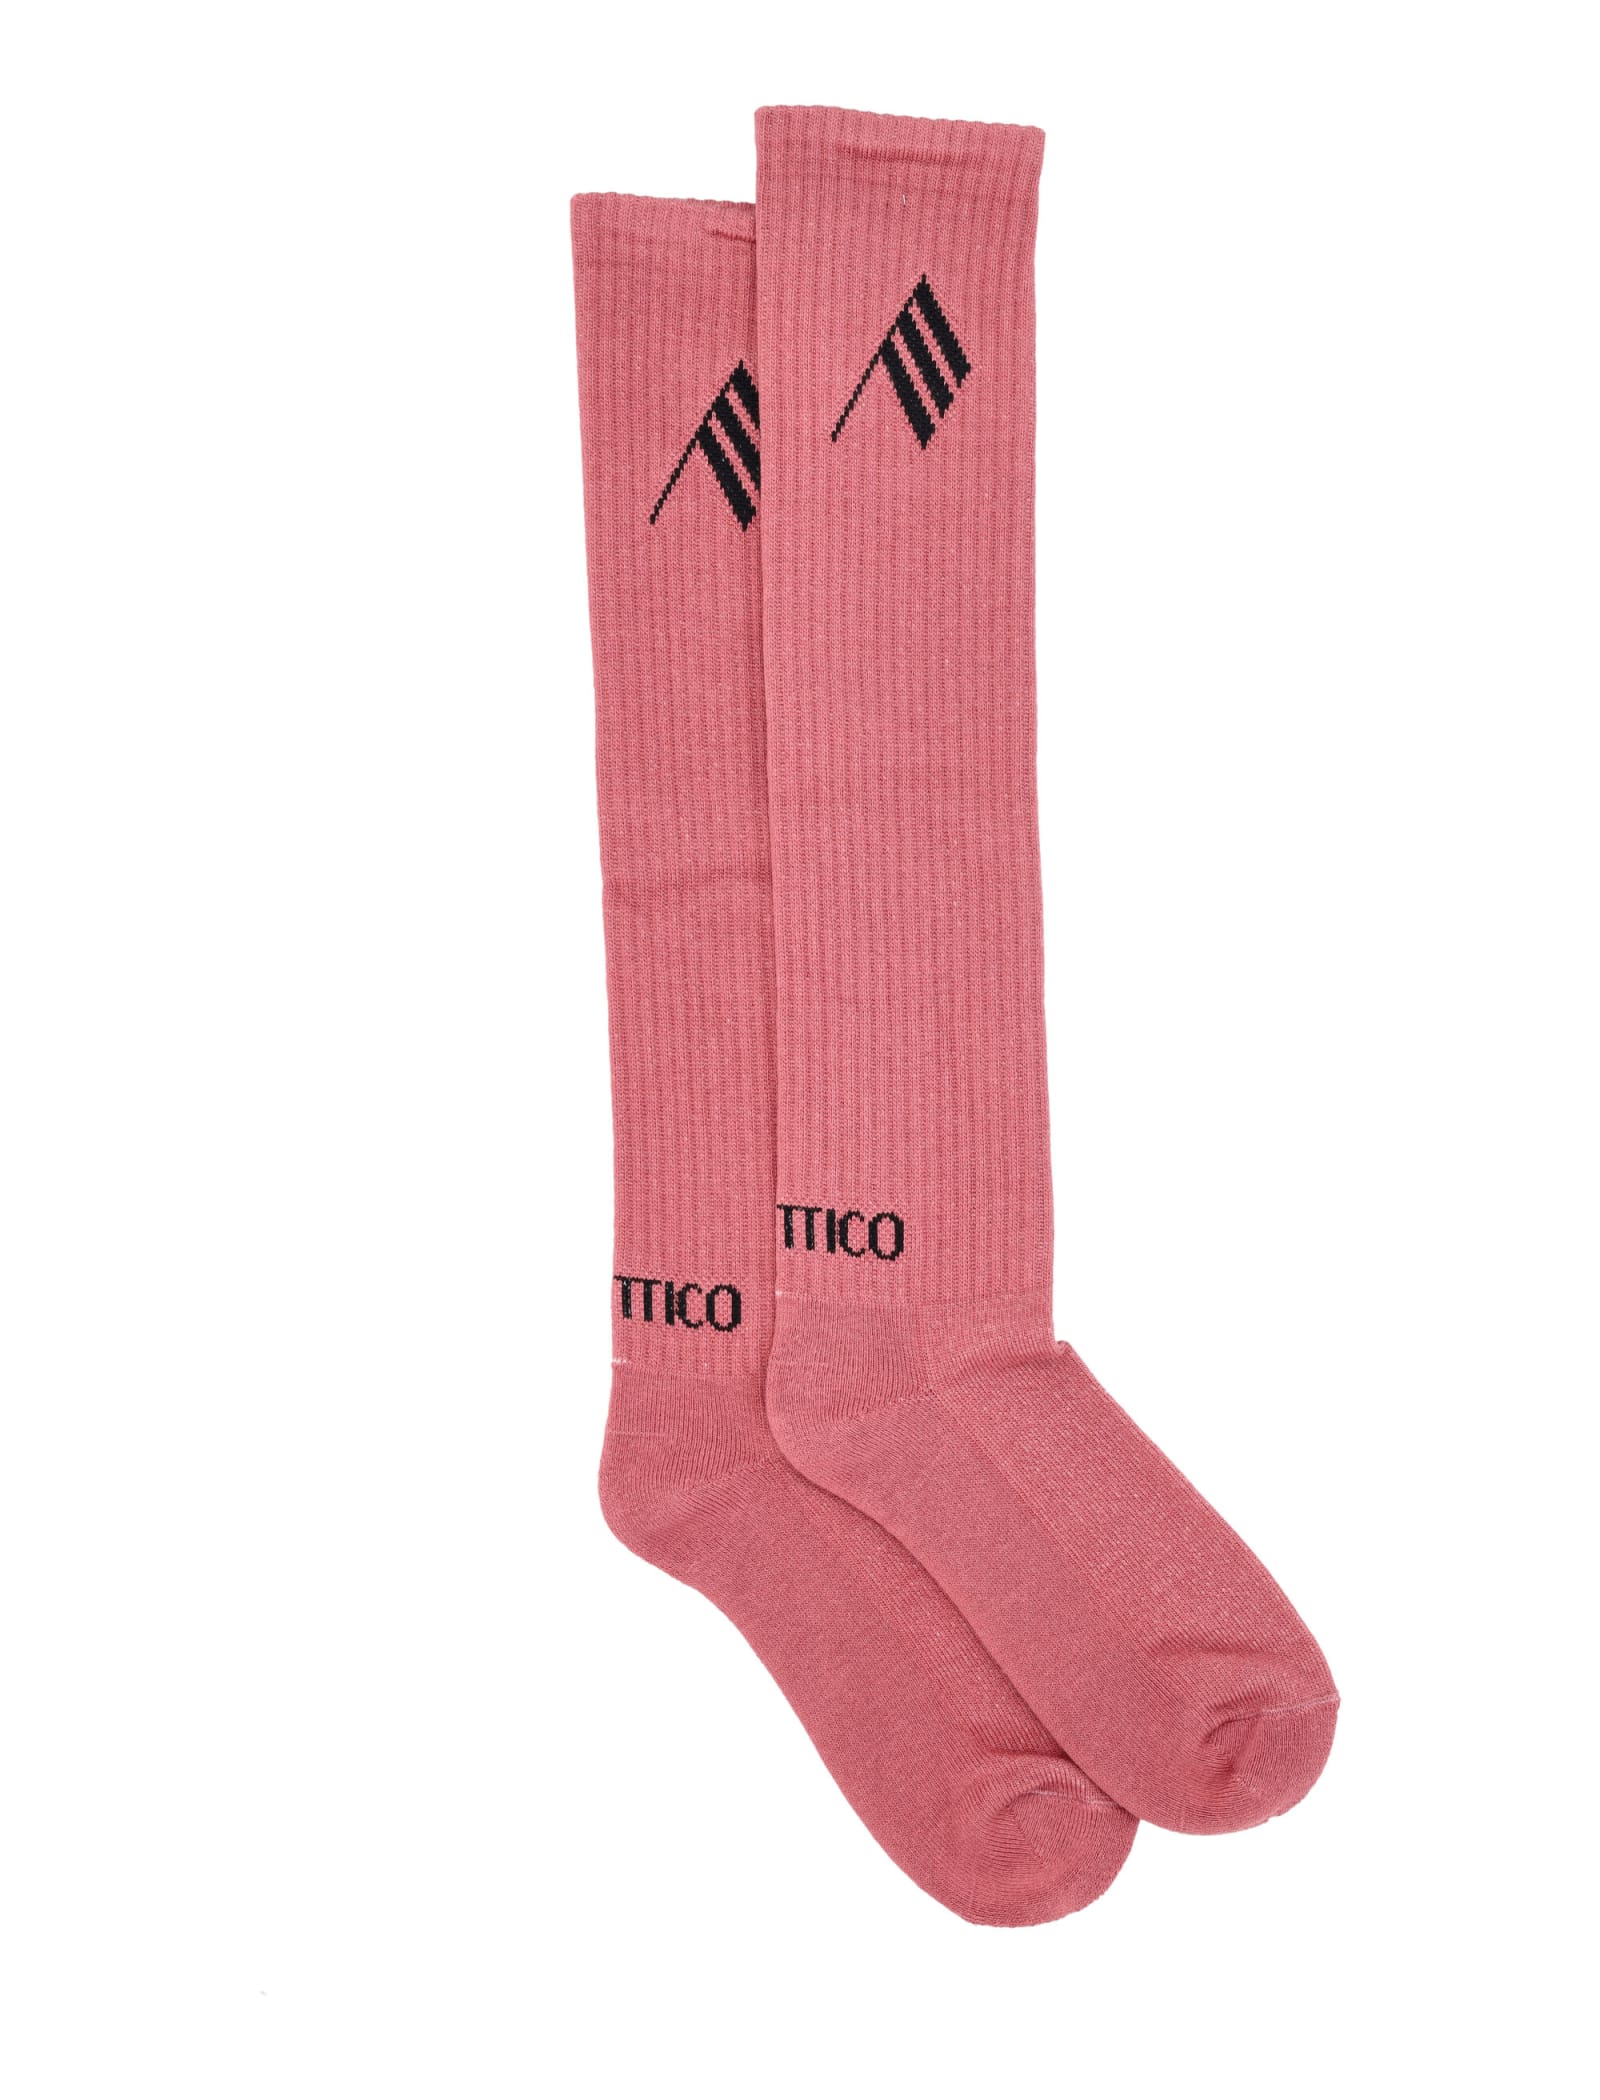 The Attico Bicolor Sponge Long Socks